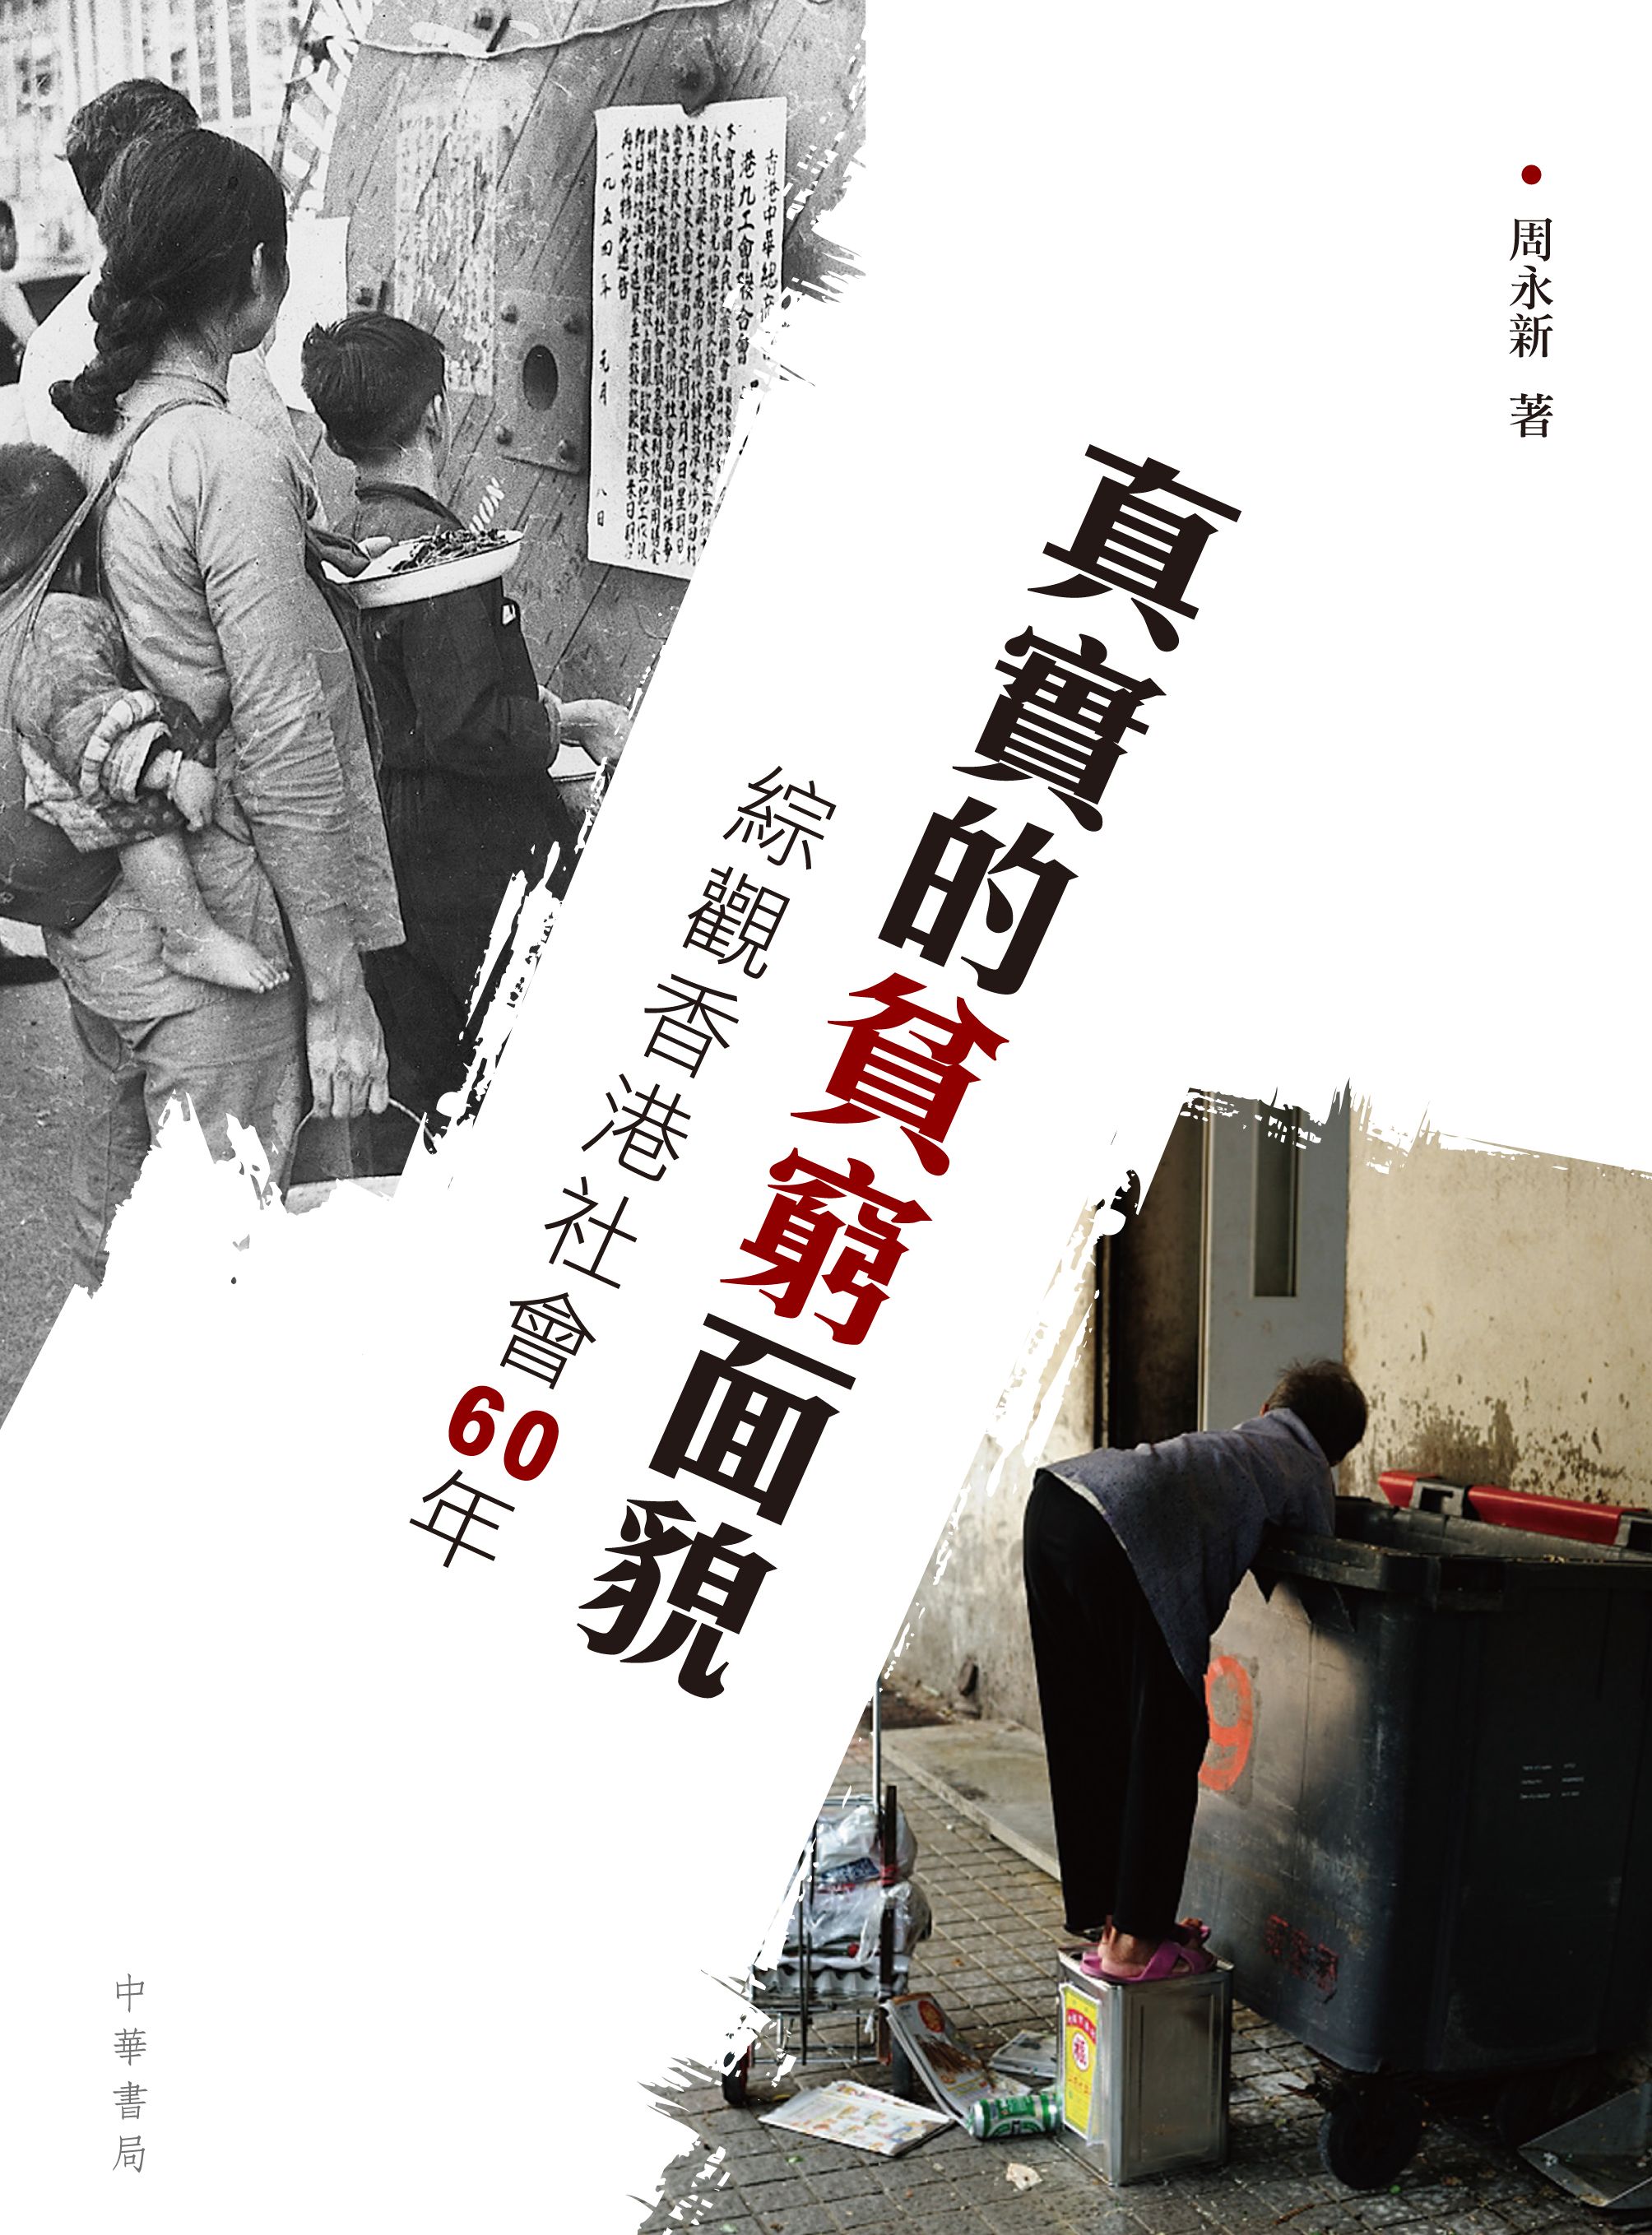 真實的貧窮面貌──綜觀香港社會60年